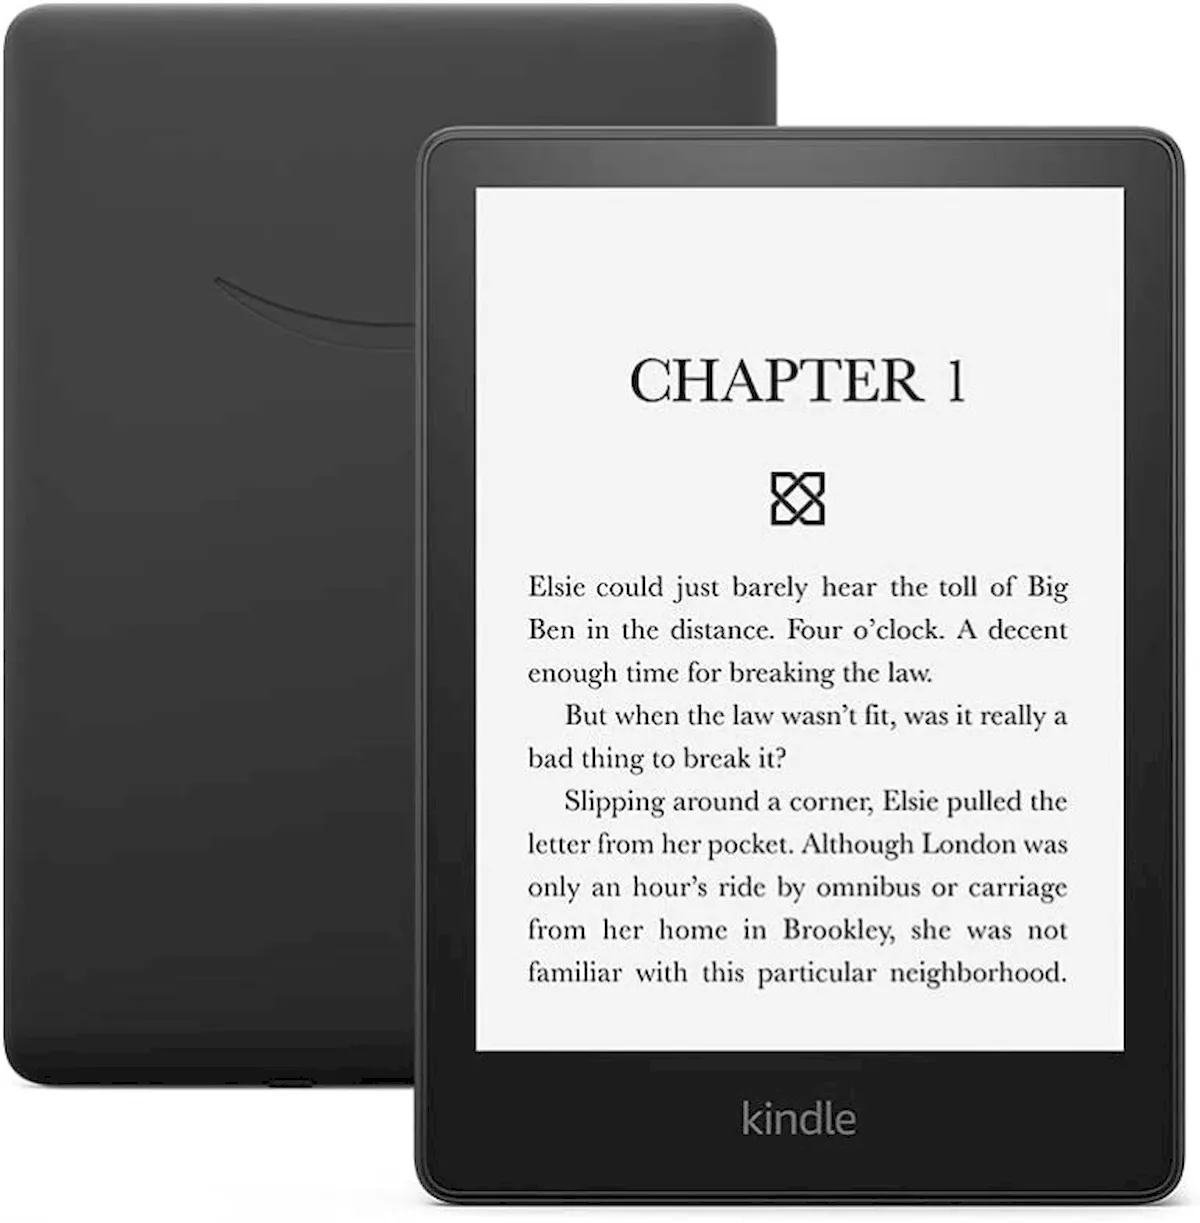 Kindle Paperwhite disponível com até 16 GB de armazenamento